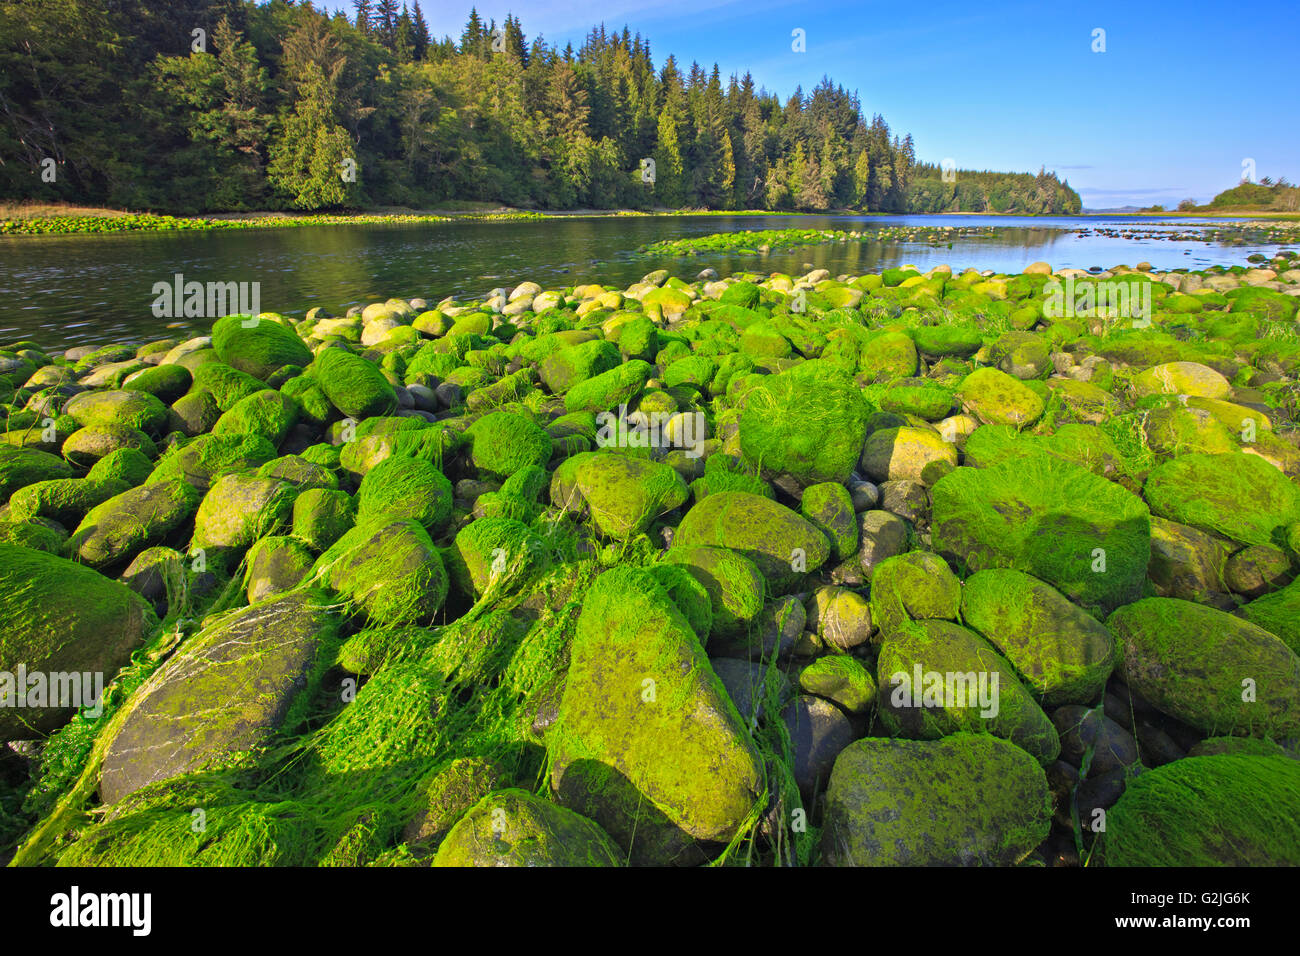 Des algues vertes sur les rochers à marée basse dans la rivière Nimpkish sur le nord de l'île de Vancouver, Colombie-Britannique, Canada. Banque D'Images